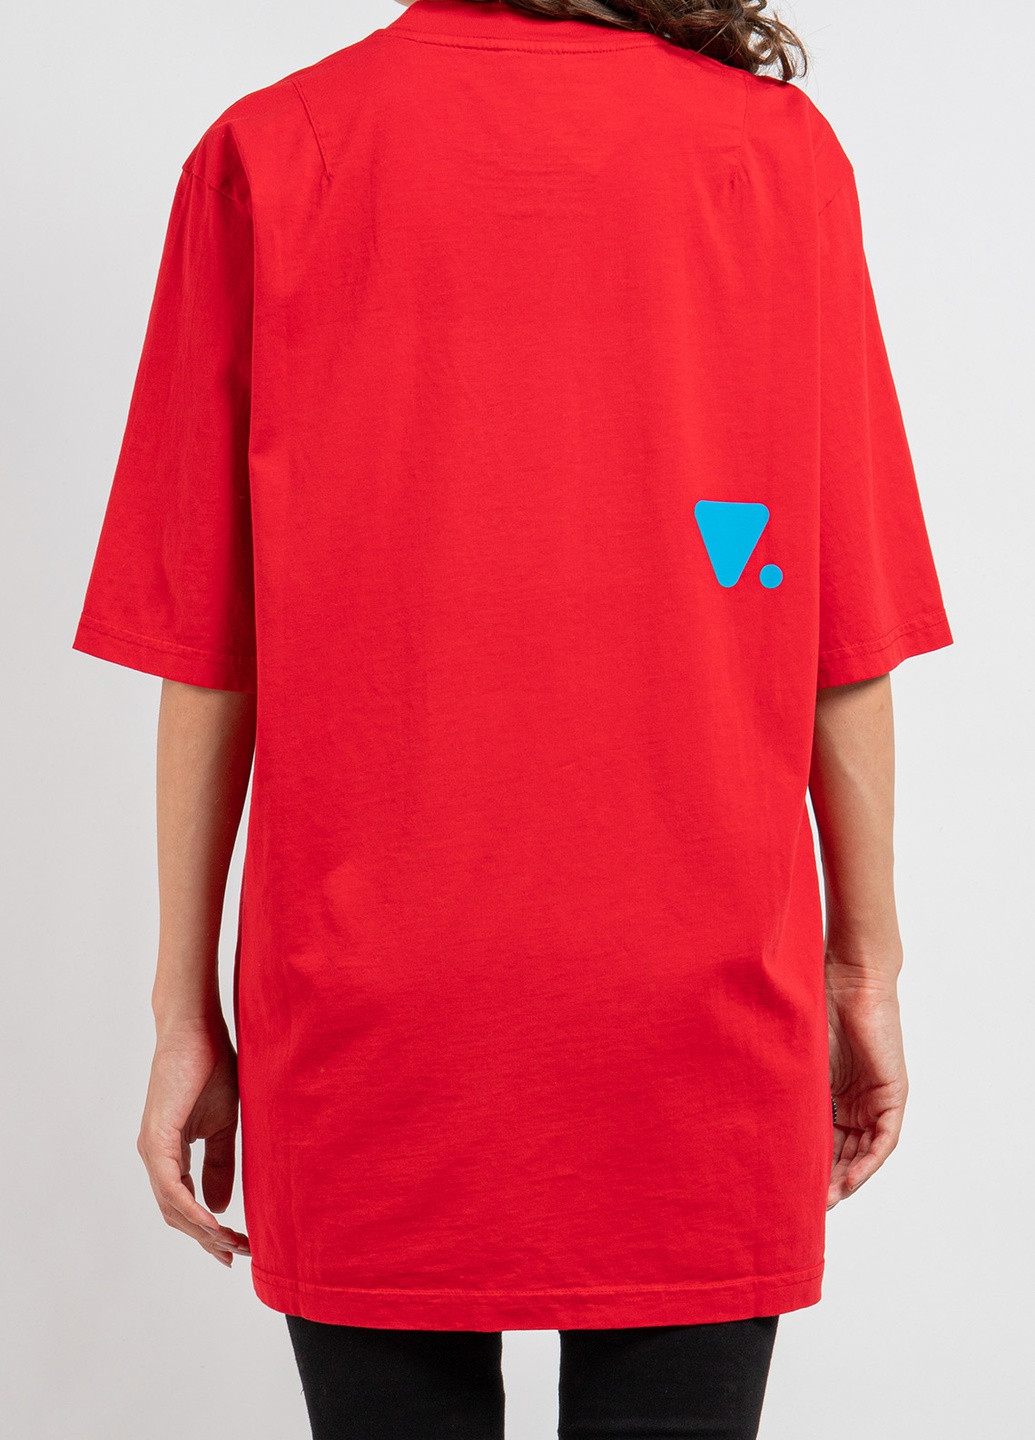 Красная футболка с логотипом цвета морской волны Valvola